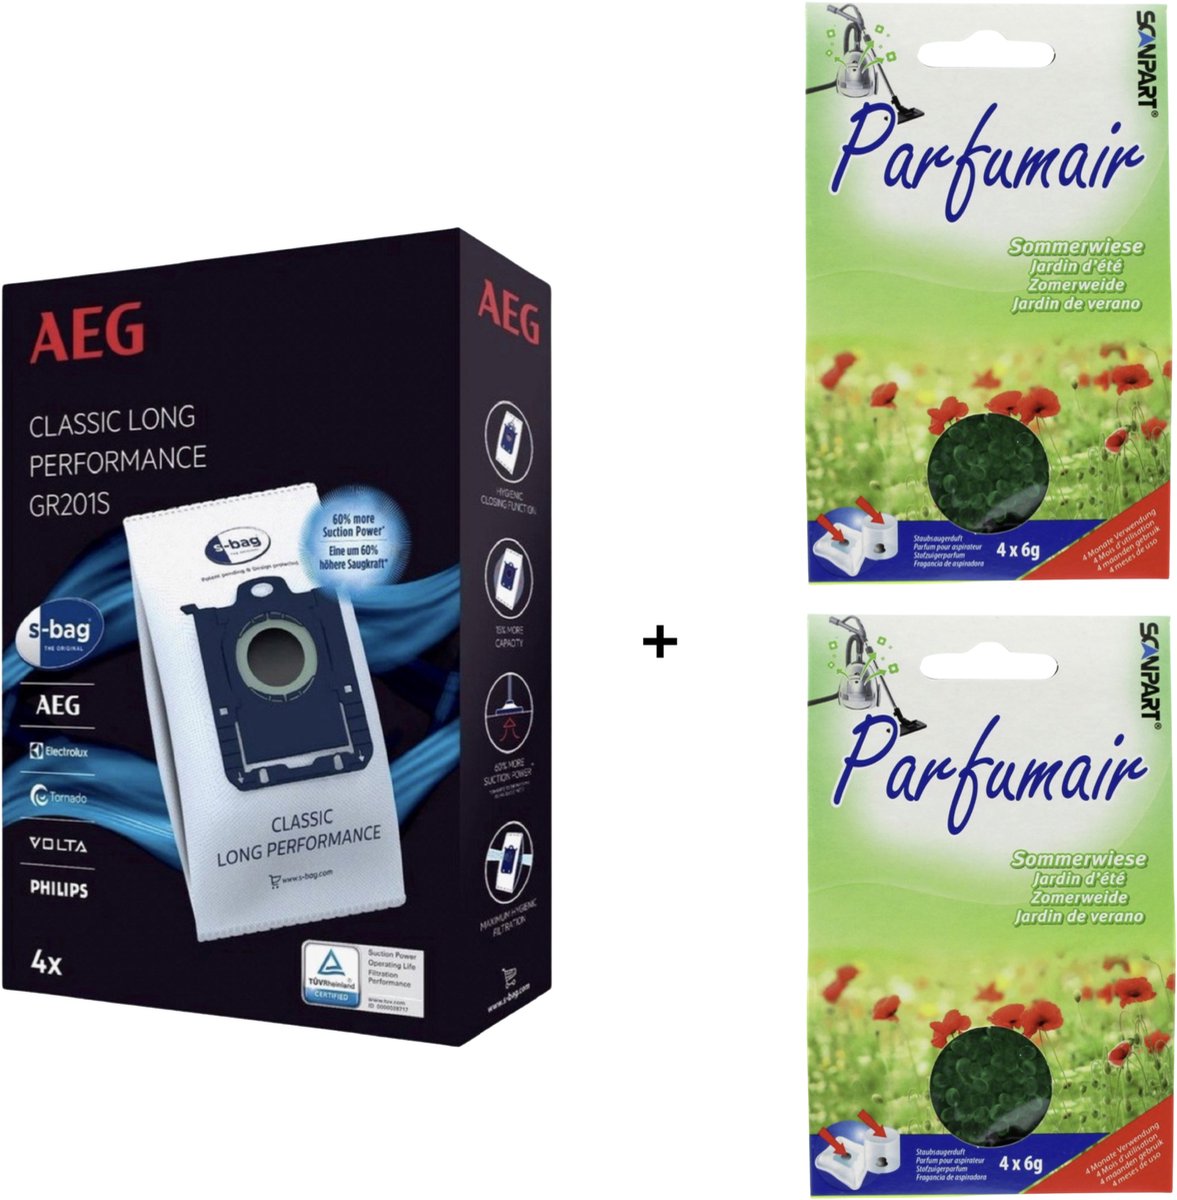 AEG - 1x S-BAG + 2x Geukorrels (zomerweide) - Stofzuigerzakken met geurparels - Voor een frisse geur - COMBIDEAL